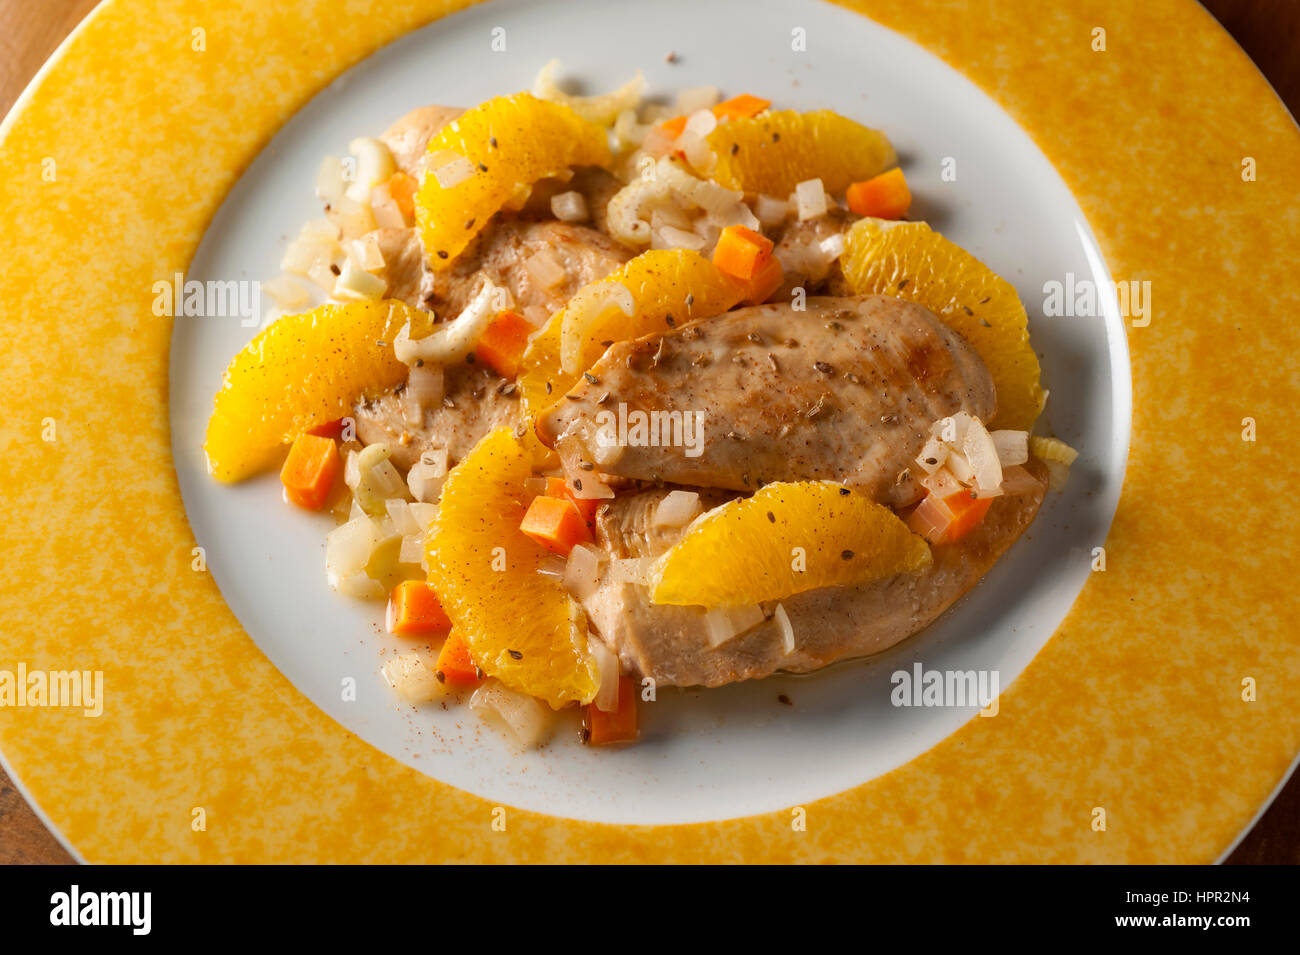 Gebratene Hühnerbrust mit Orangenscheiben und gehackte Gemüse Sauce auf einer runden weißen und gelben Platte Stockfoto